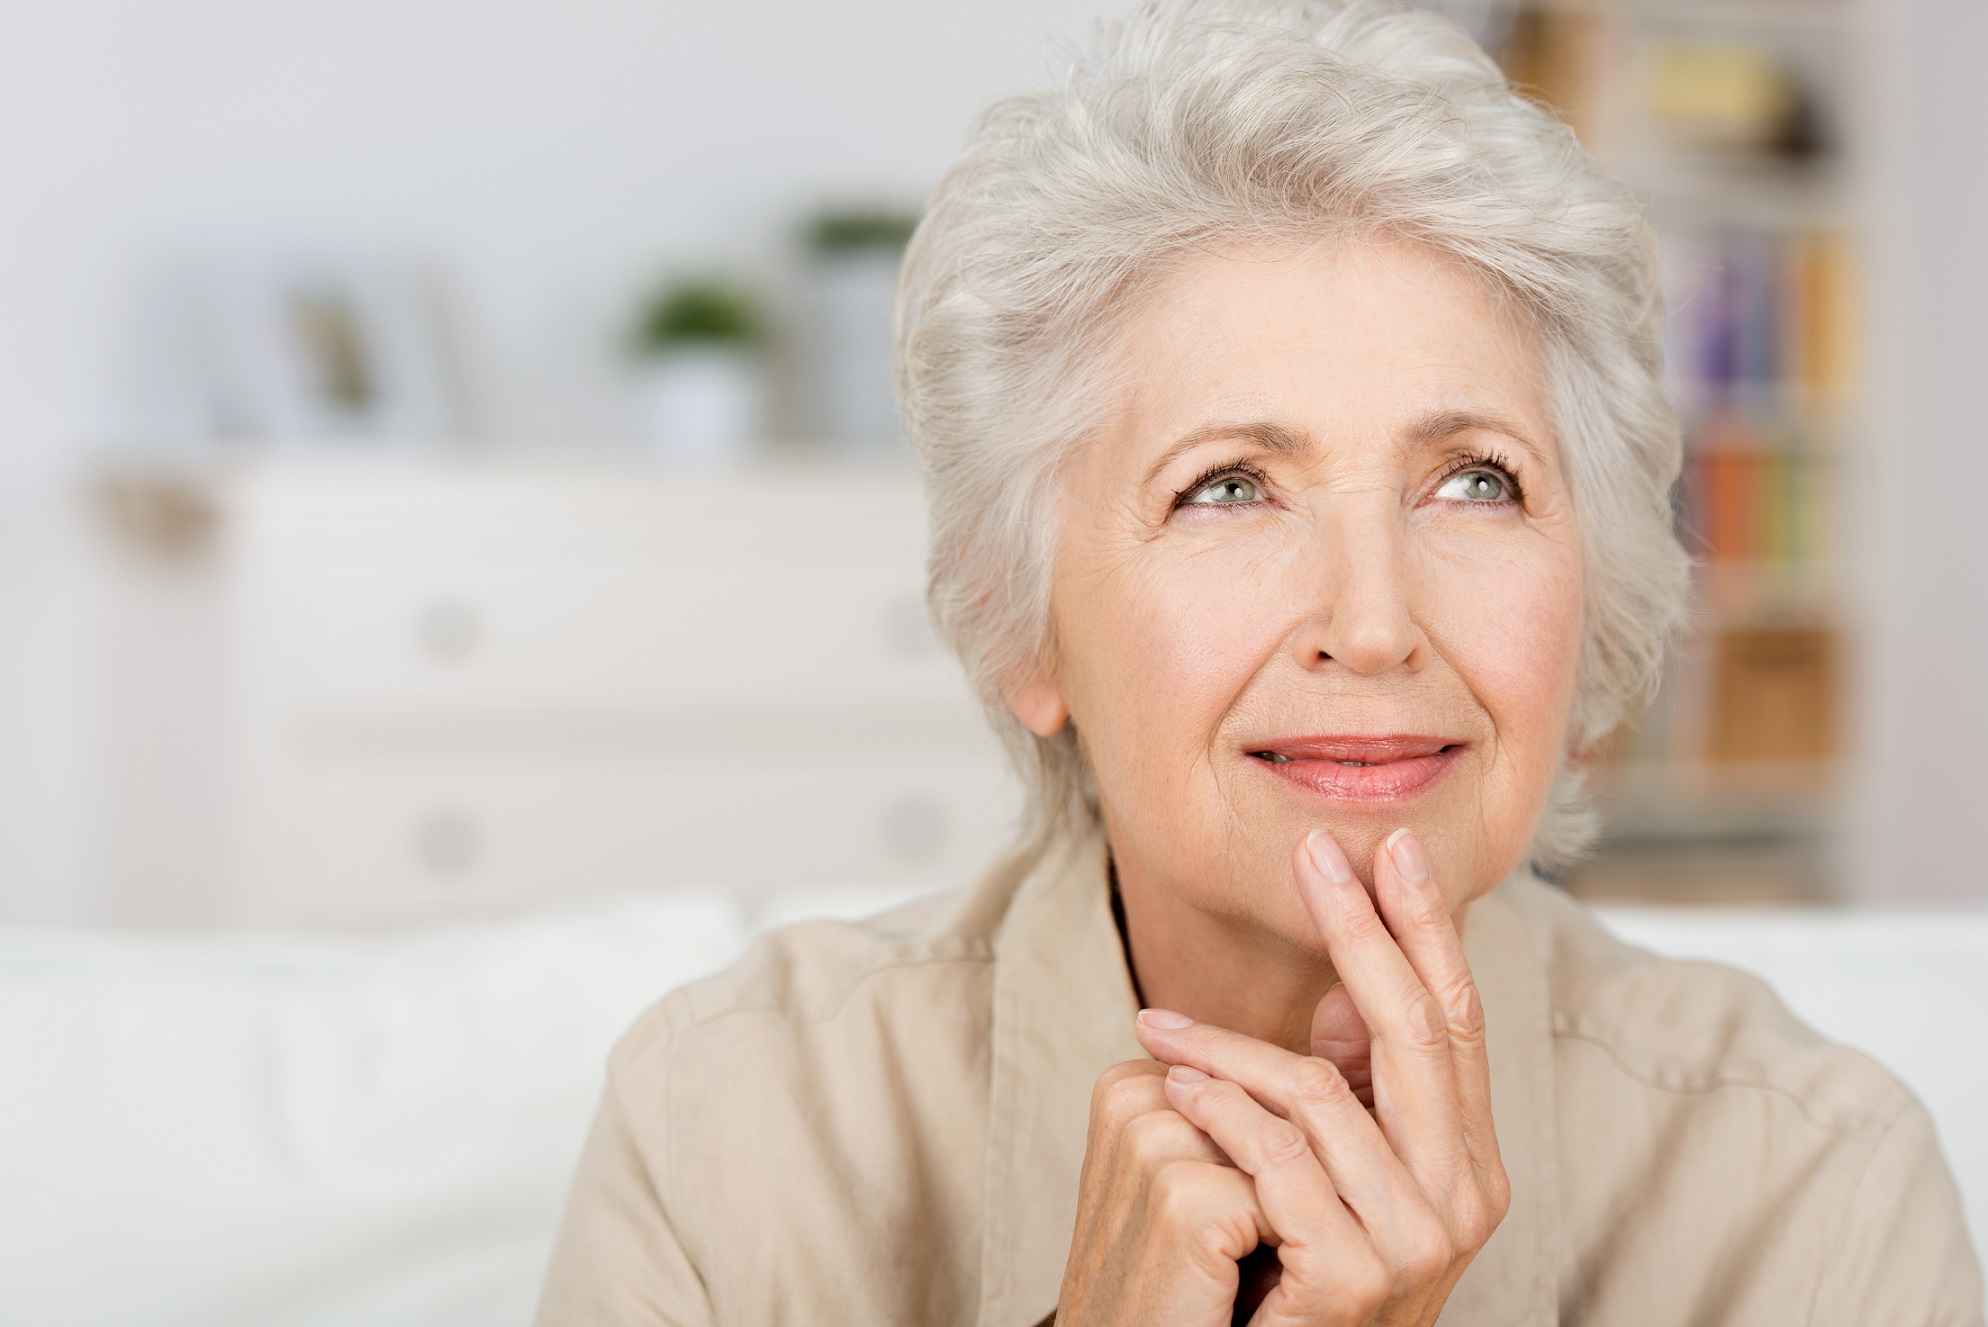 Quel âge faites-vous ? Si certaines personnes paraissent plus vieilles, c'est à cause du gène MC1R. © racorn, Shutterstock